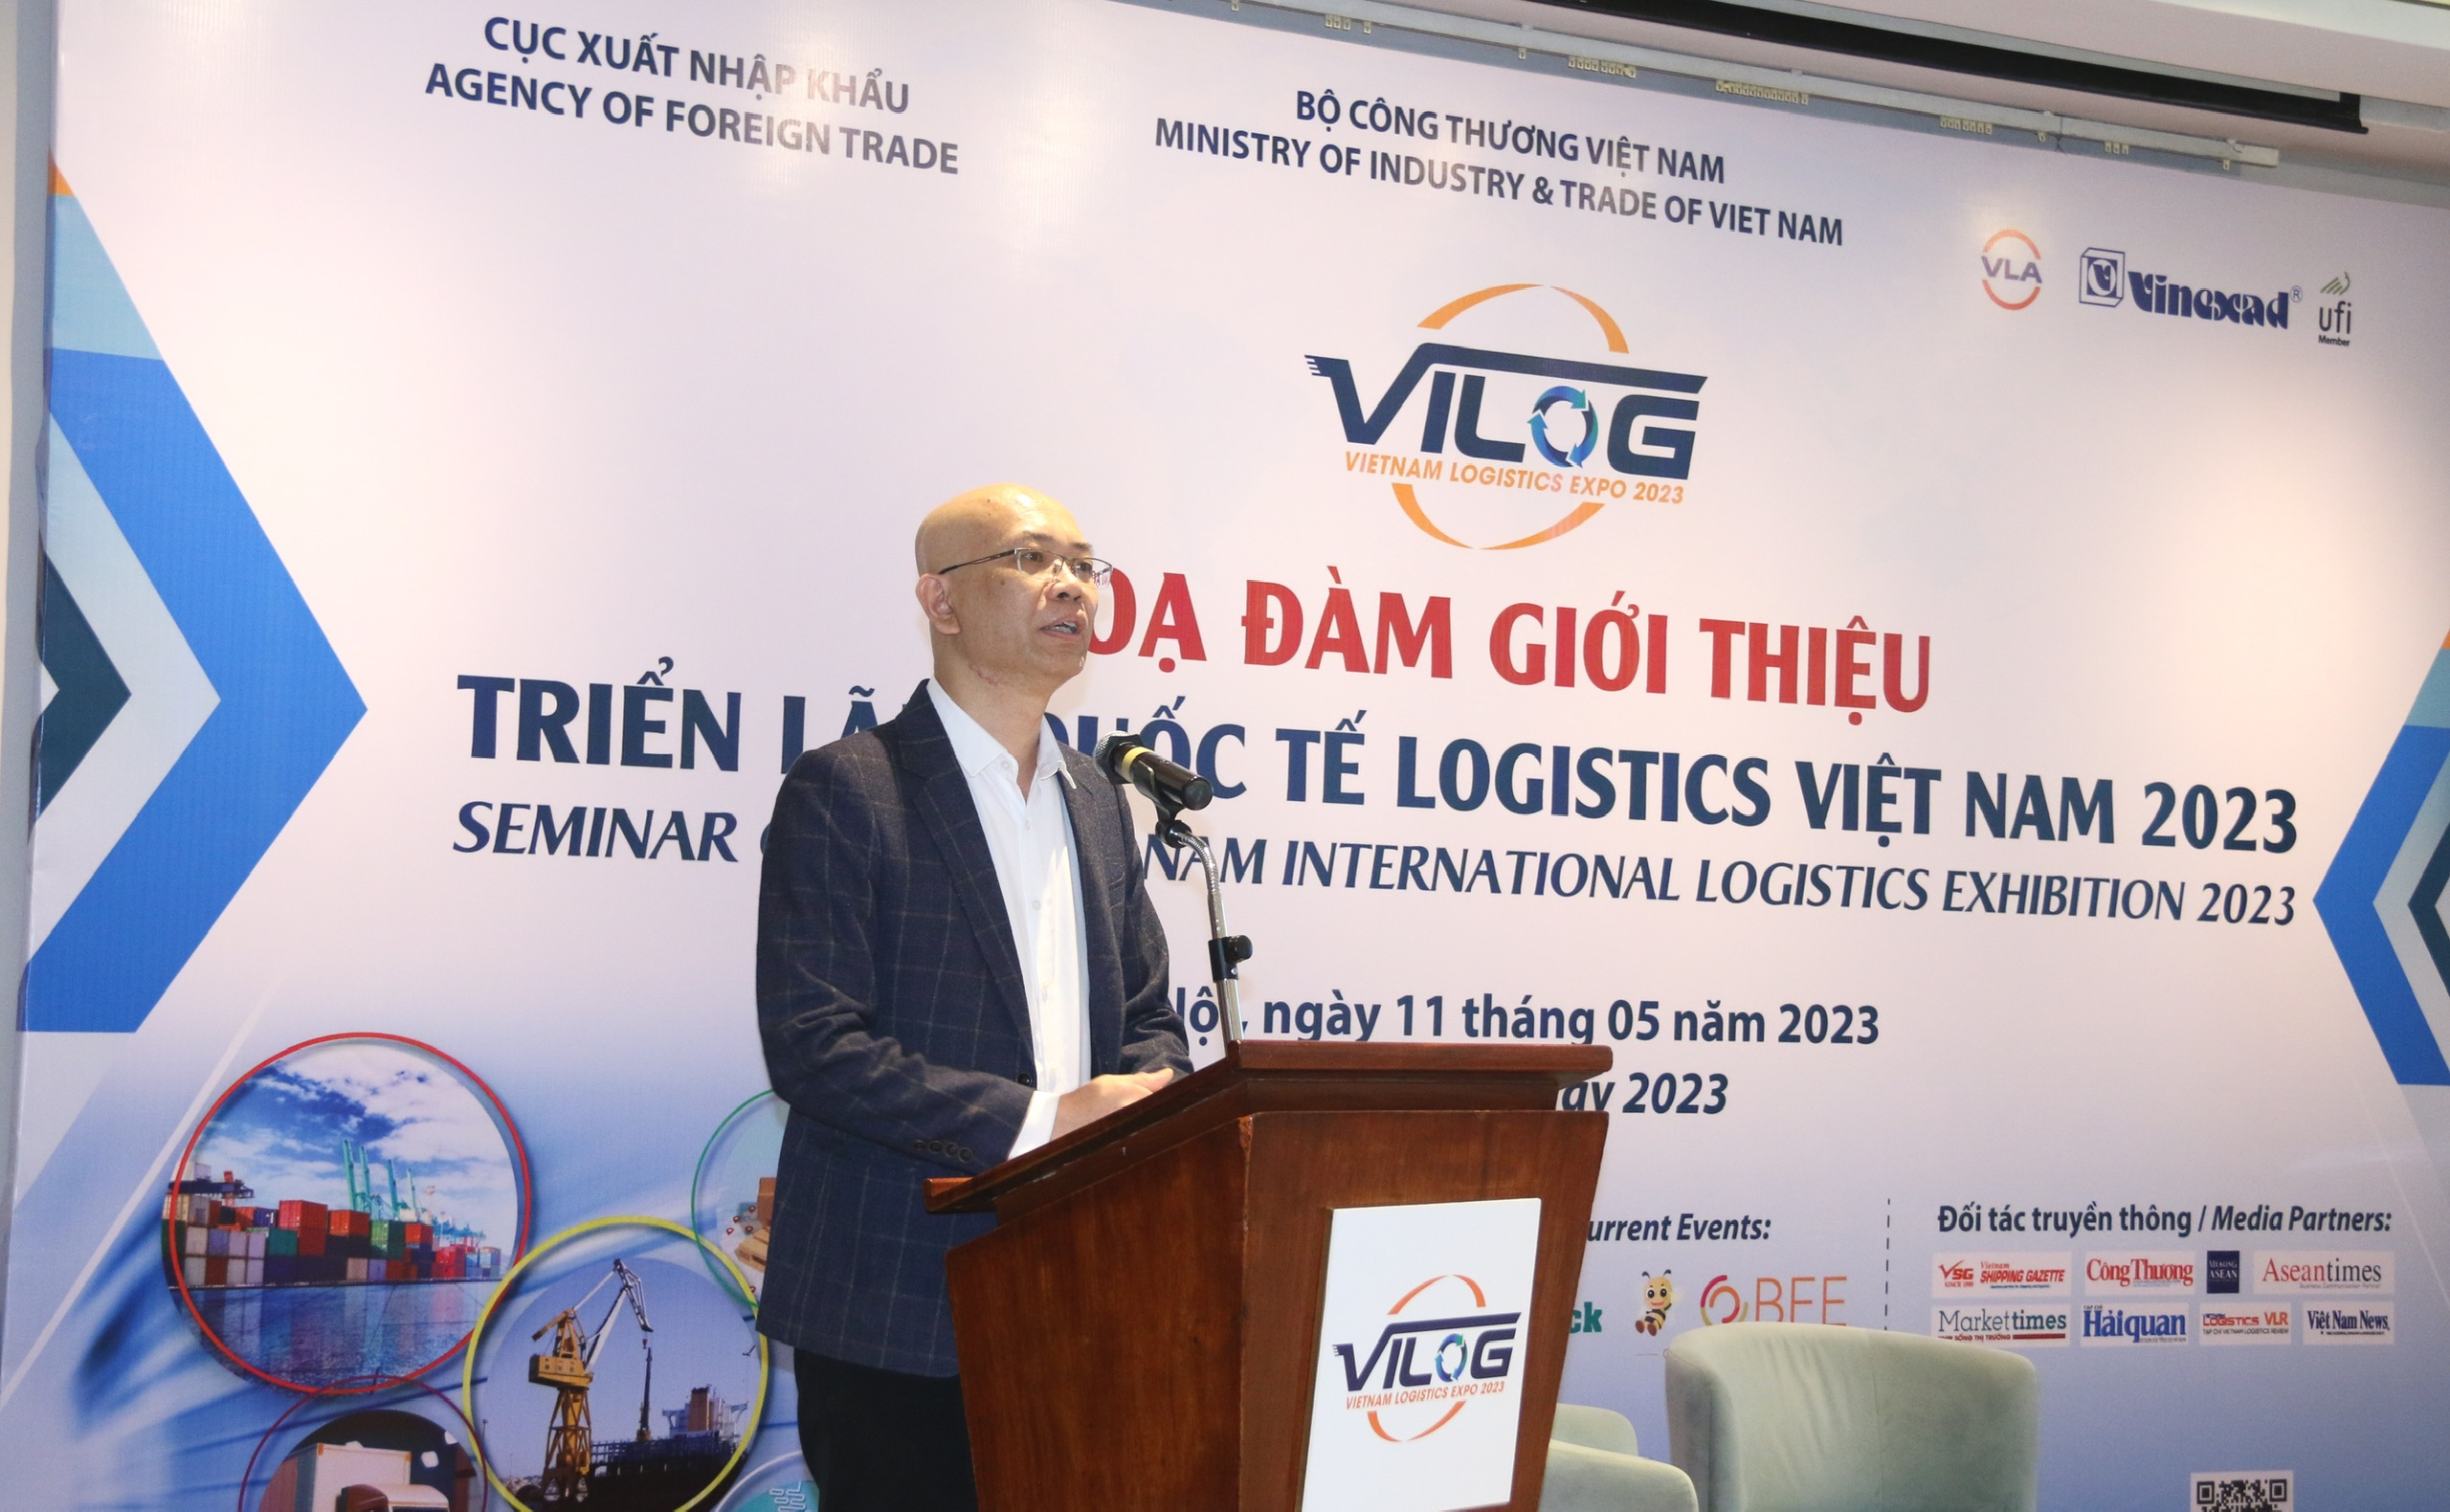  Ông Trần Thanh Hải – Phó cục trưởng Cục Xuất nhập khẩu – Bộ Công Thương 